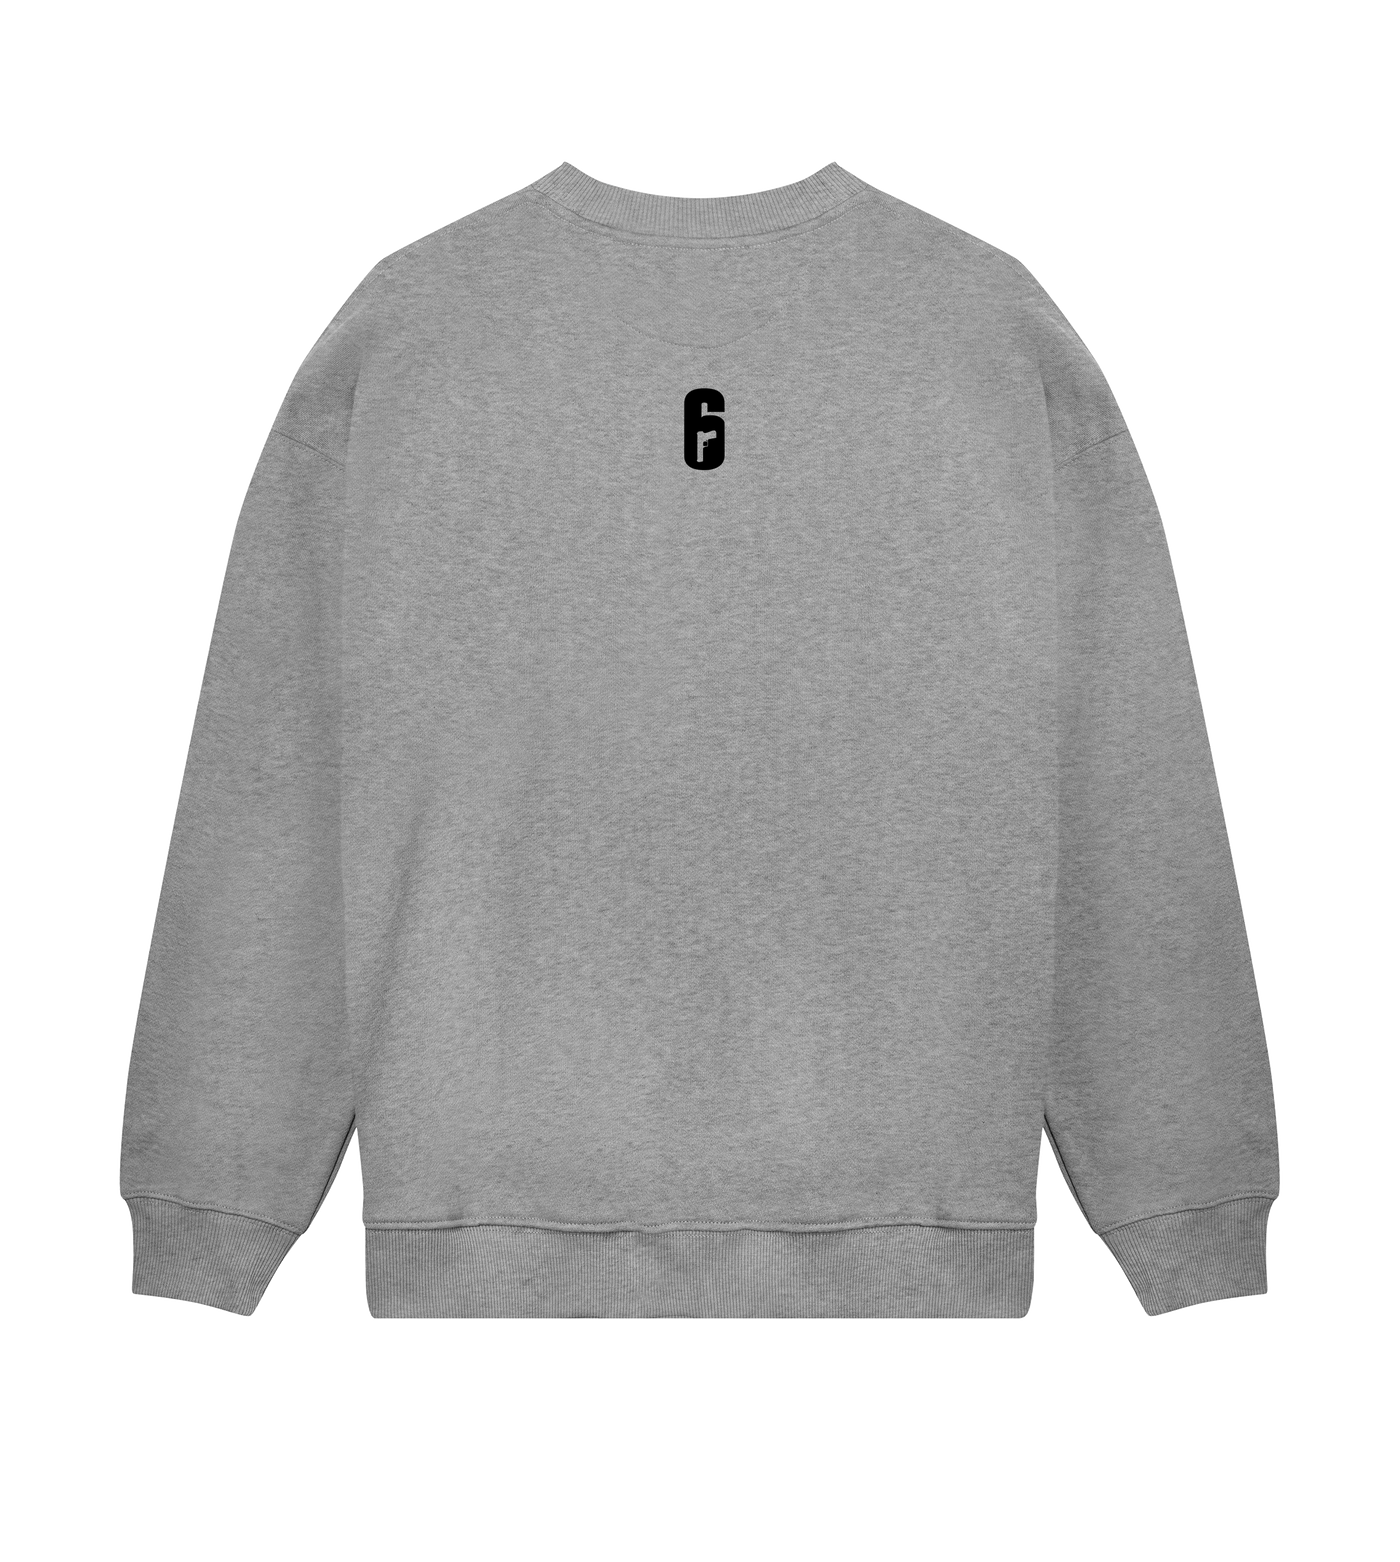 6 SIEGE – Nighthaven Sweatshirt